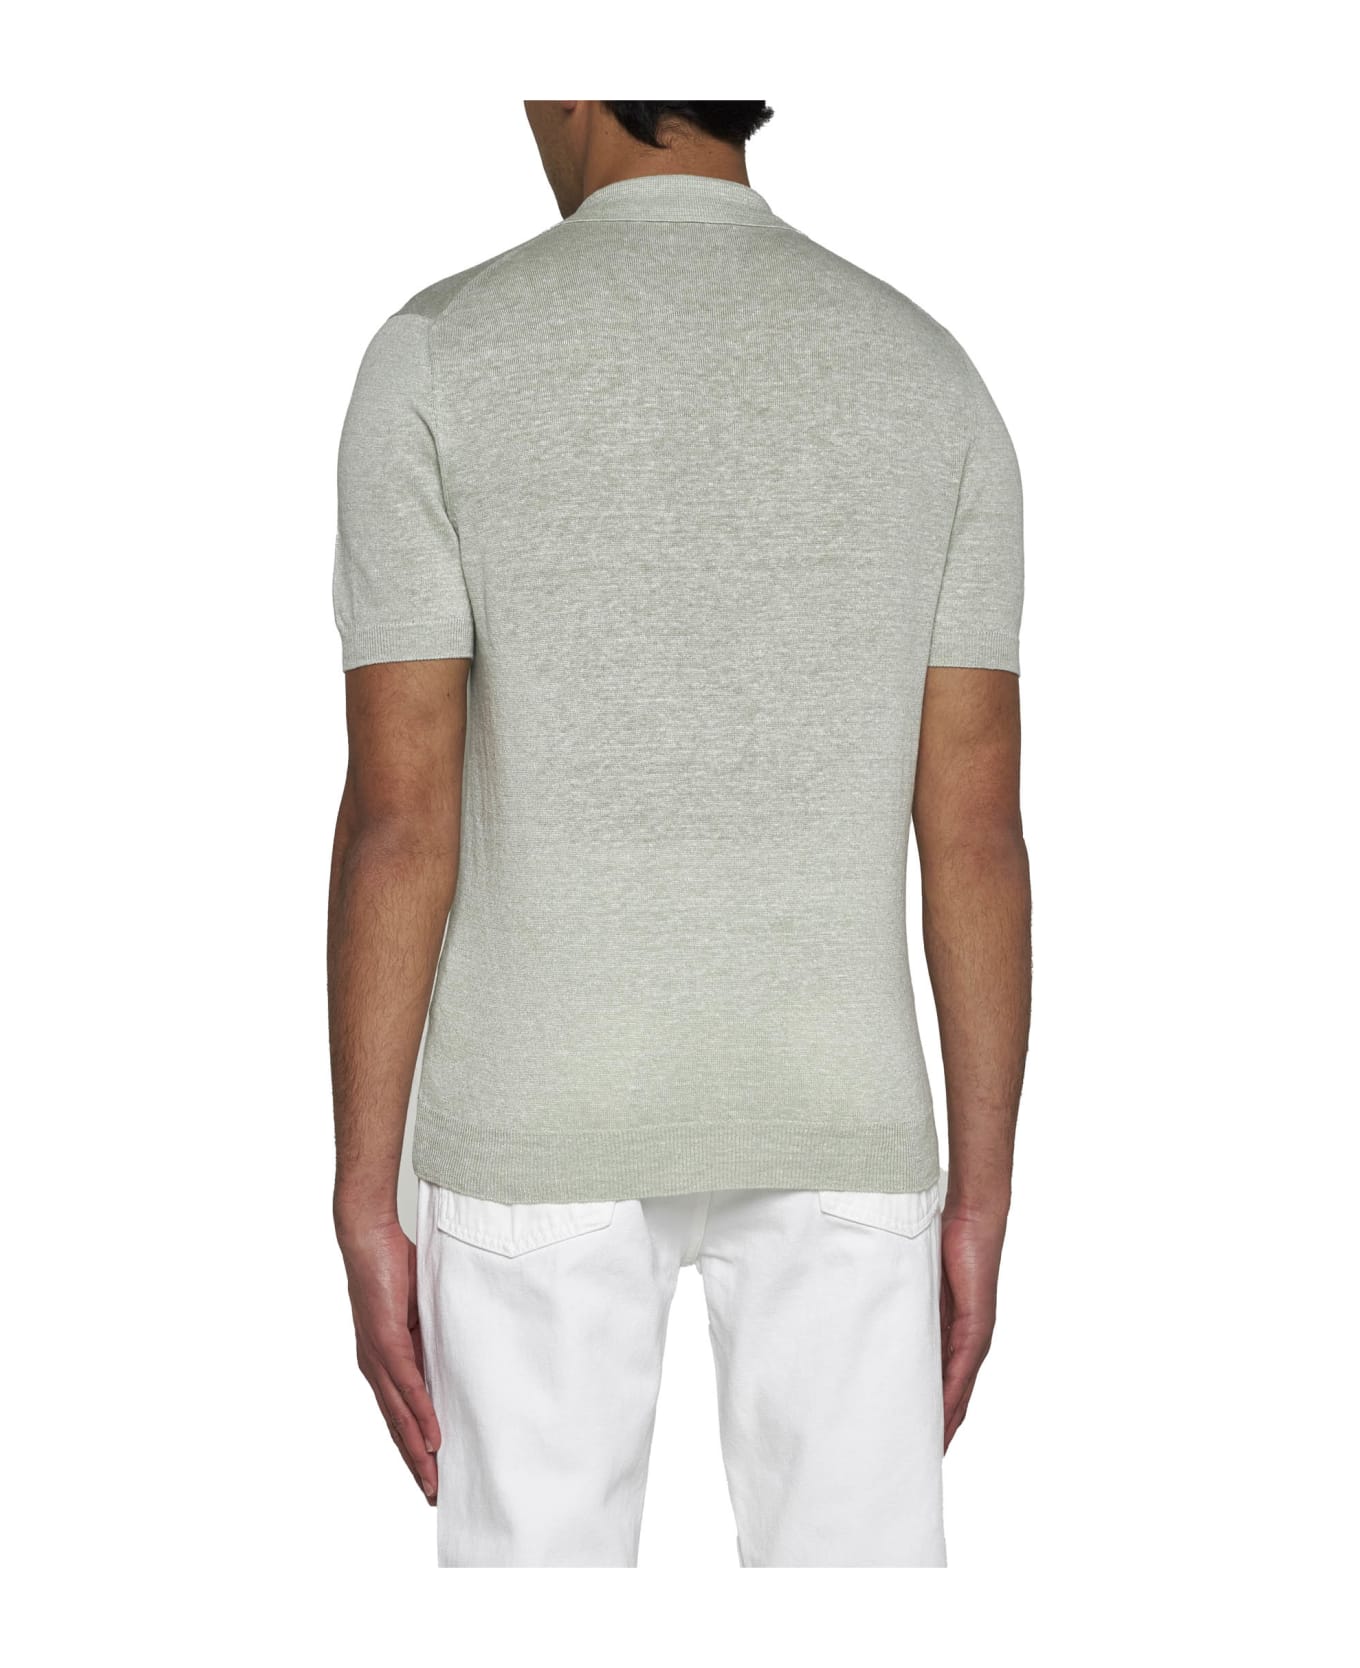 Tagliatore Linen And Cotton Polo Shirt - Verde chiaro